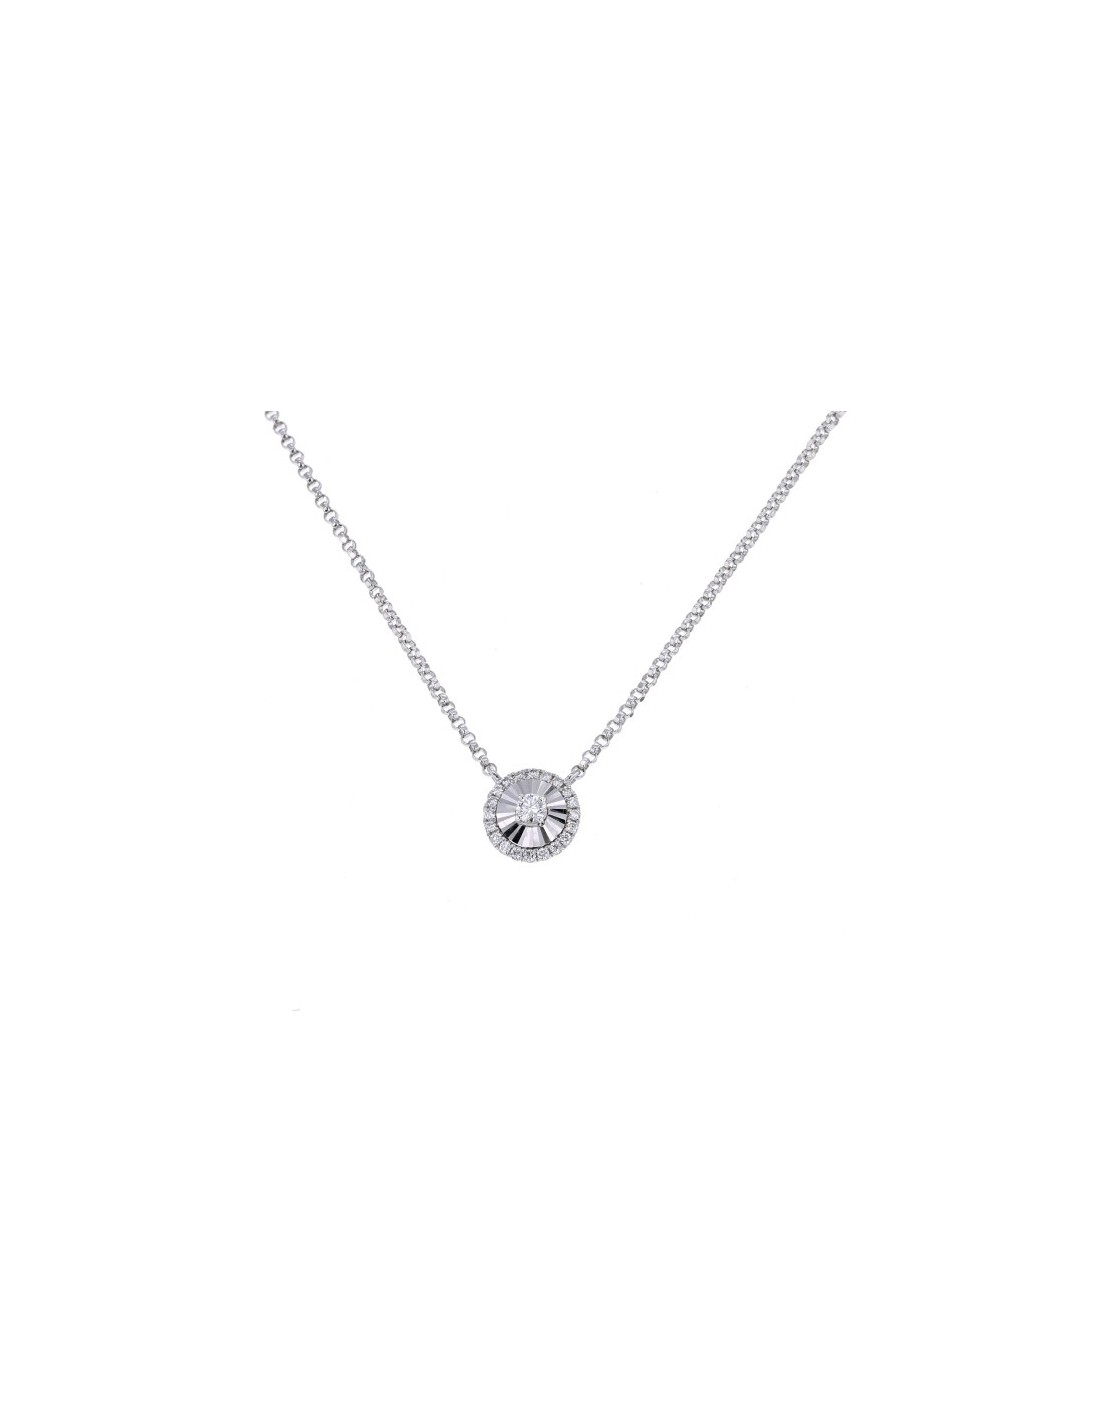 Diamond necklace CNC set round shape diamond necklace in 18 K gold